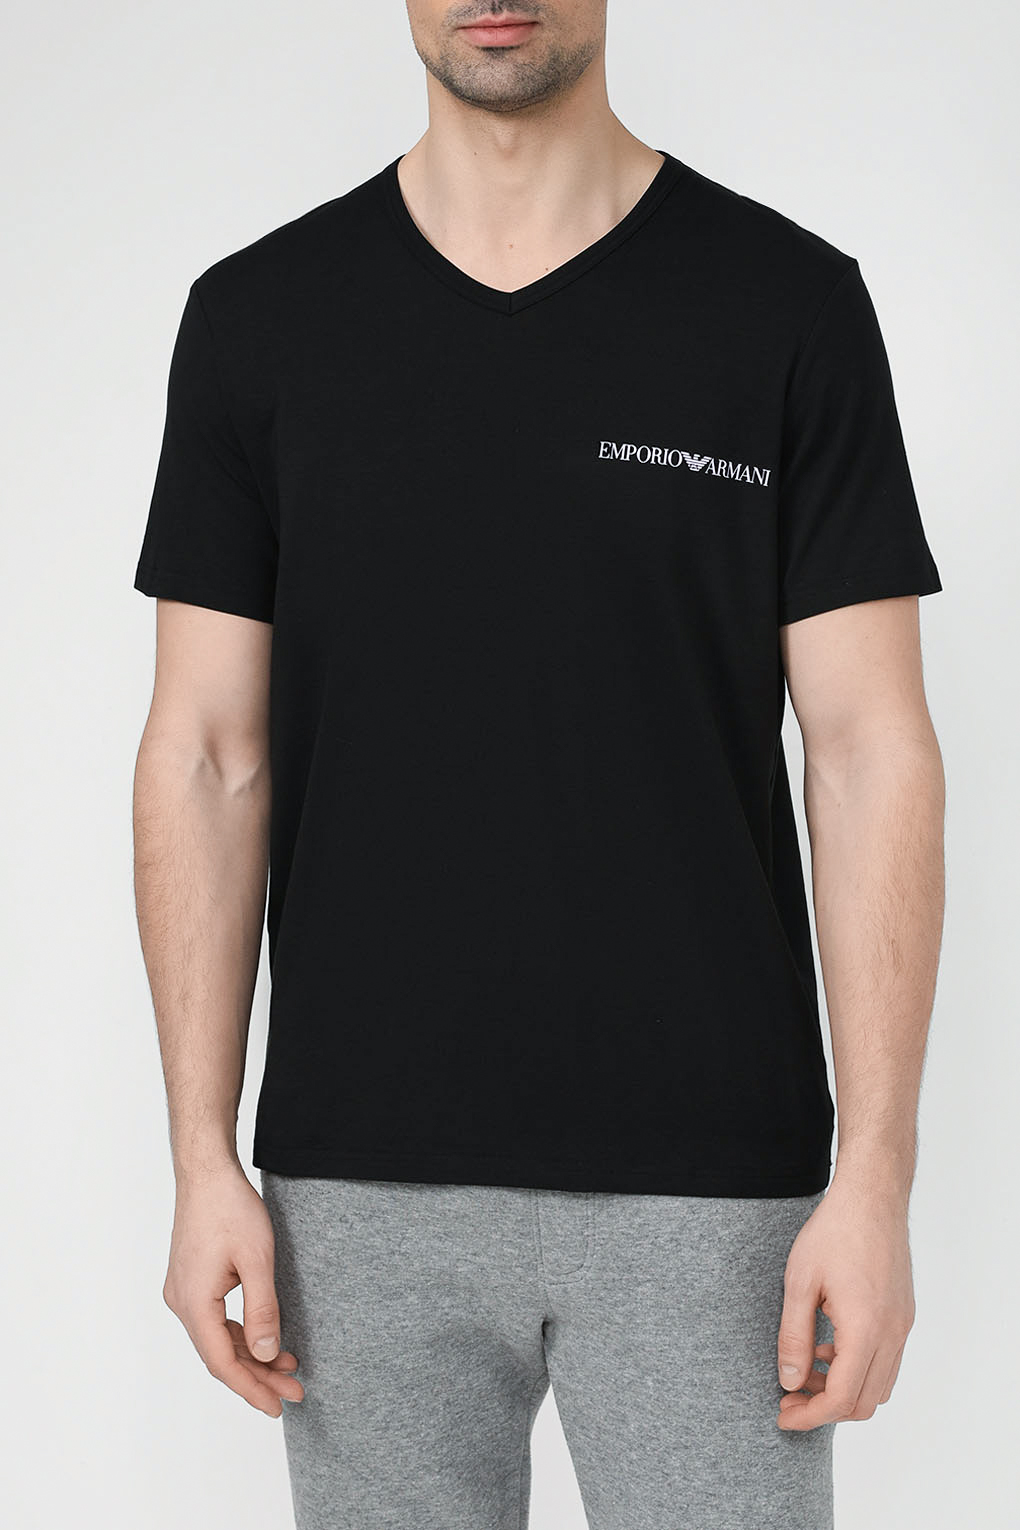 

Комплект футболок мужских Emporio Armani 111849 4R717 черных M, Черный, 111849 4R717